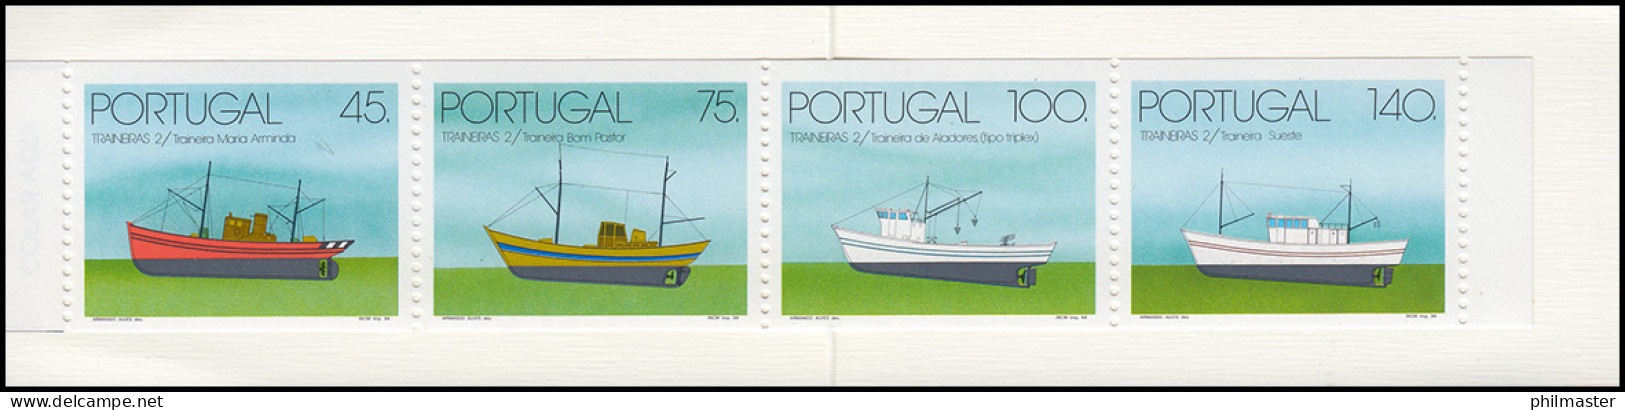 Portugal-Markenheftchen 11 Küstenfischerei Schleppnetzschiffe 1994, Postfrisch - Markenheftchen